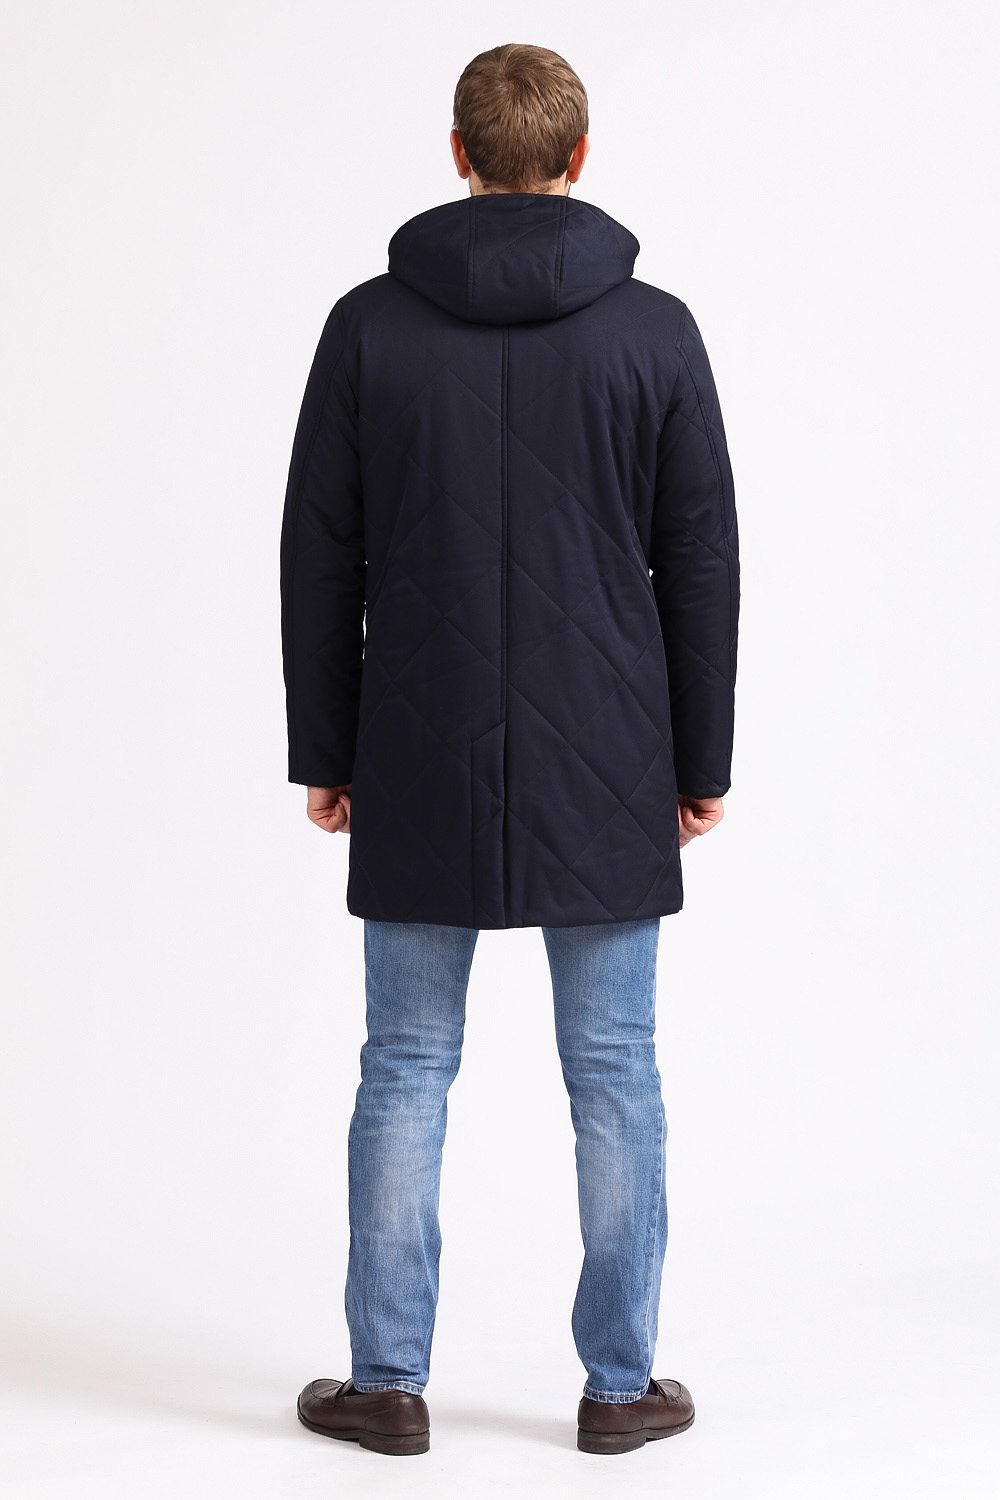 Зимняя куртка темно-синяя на молнии прямая 50022